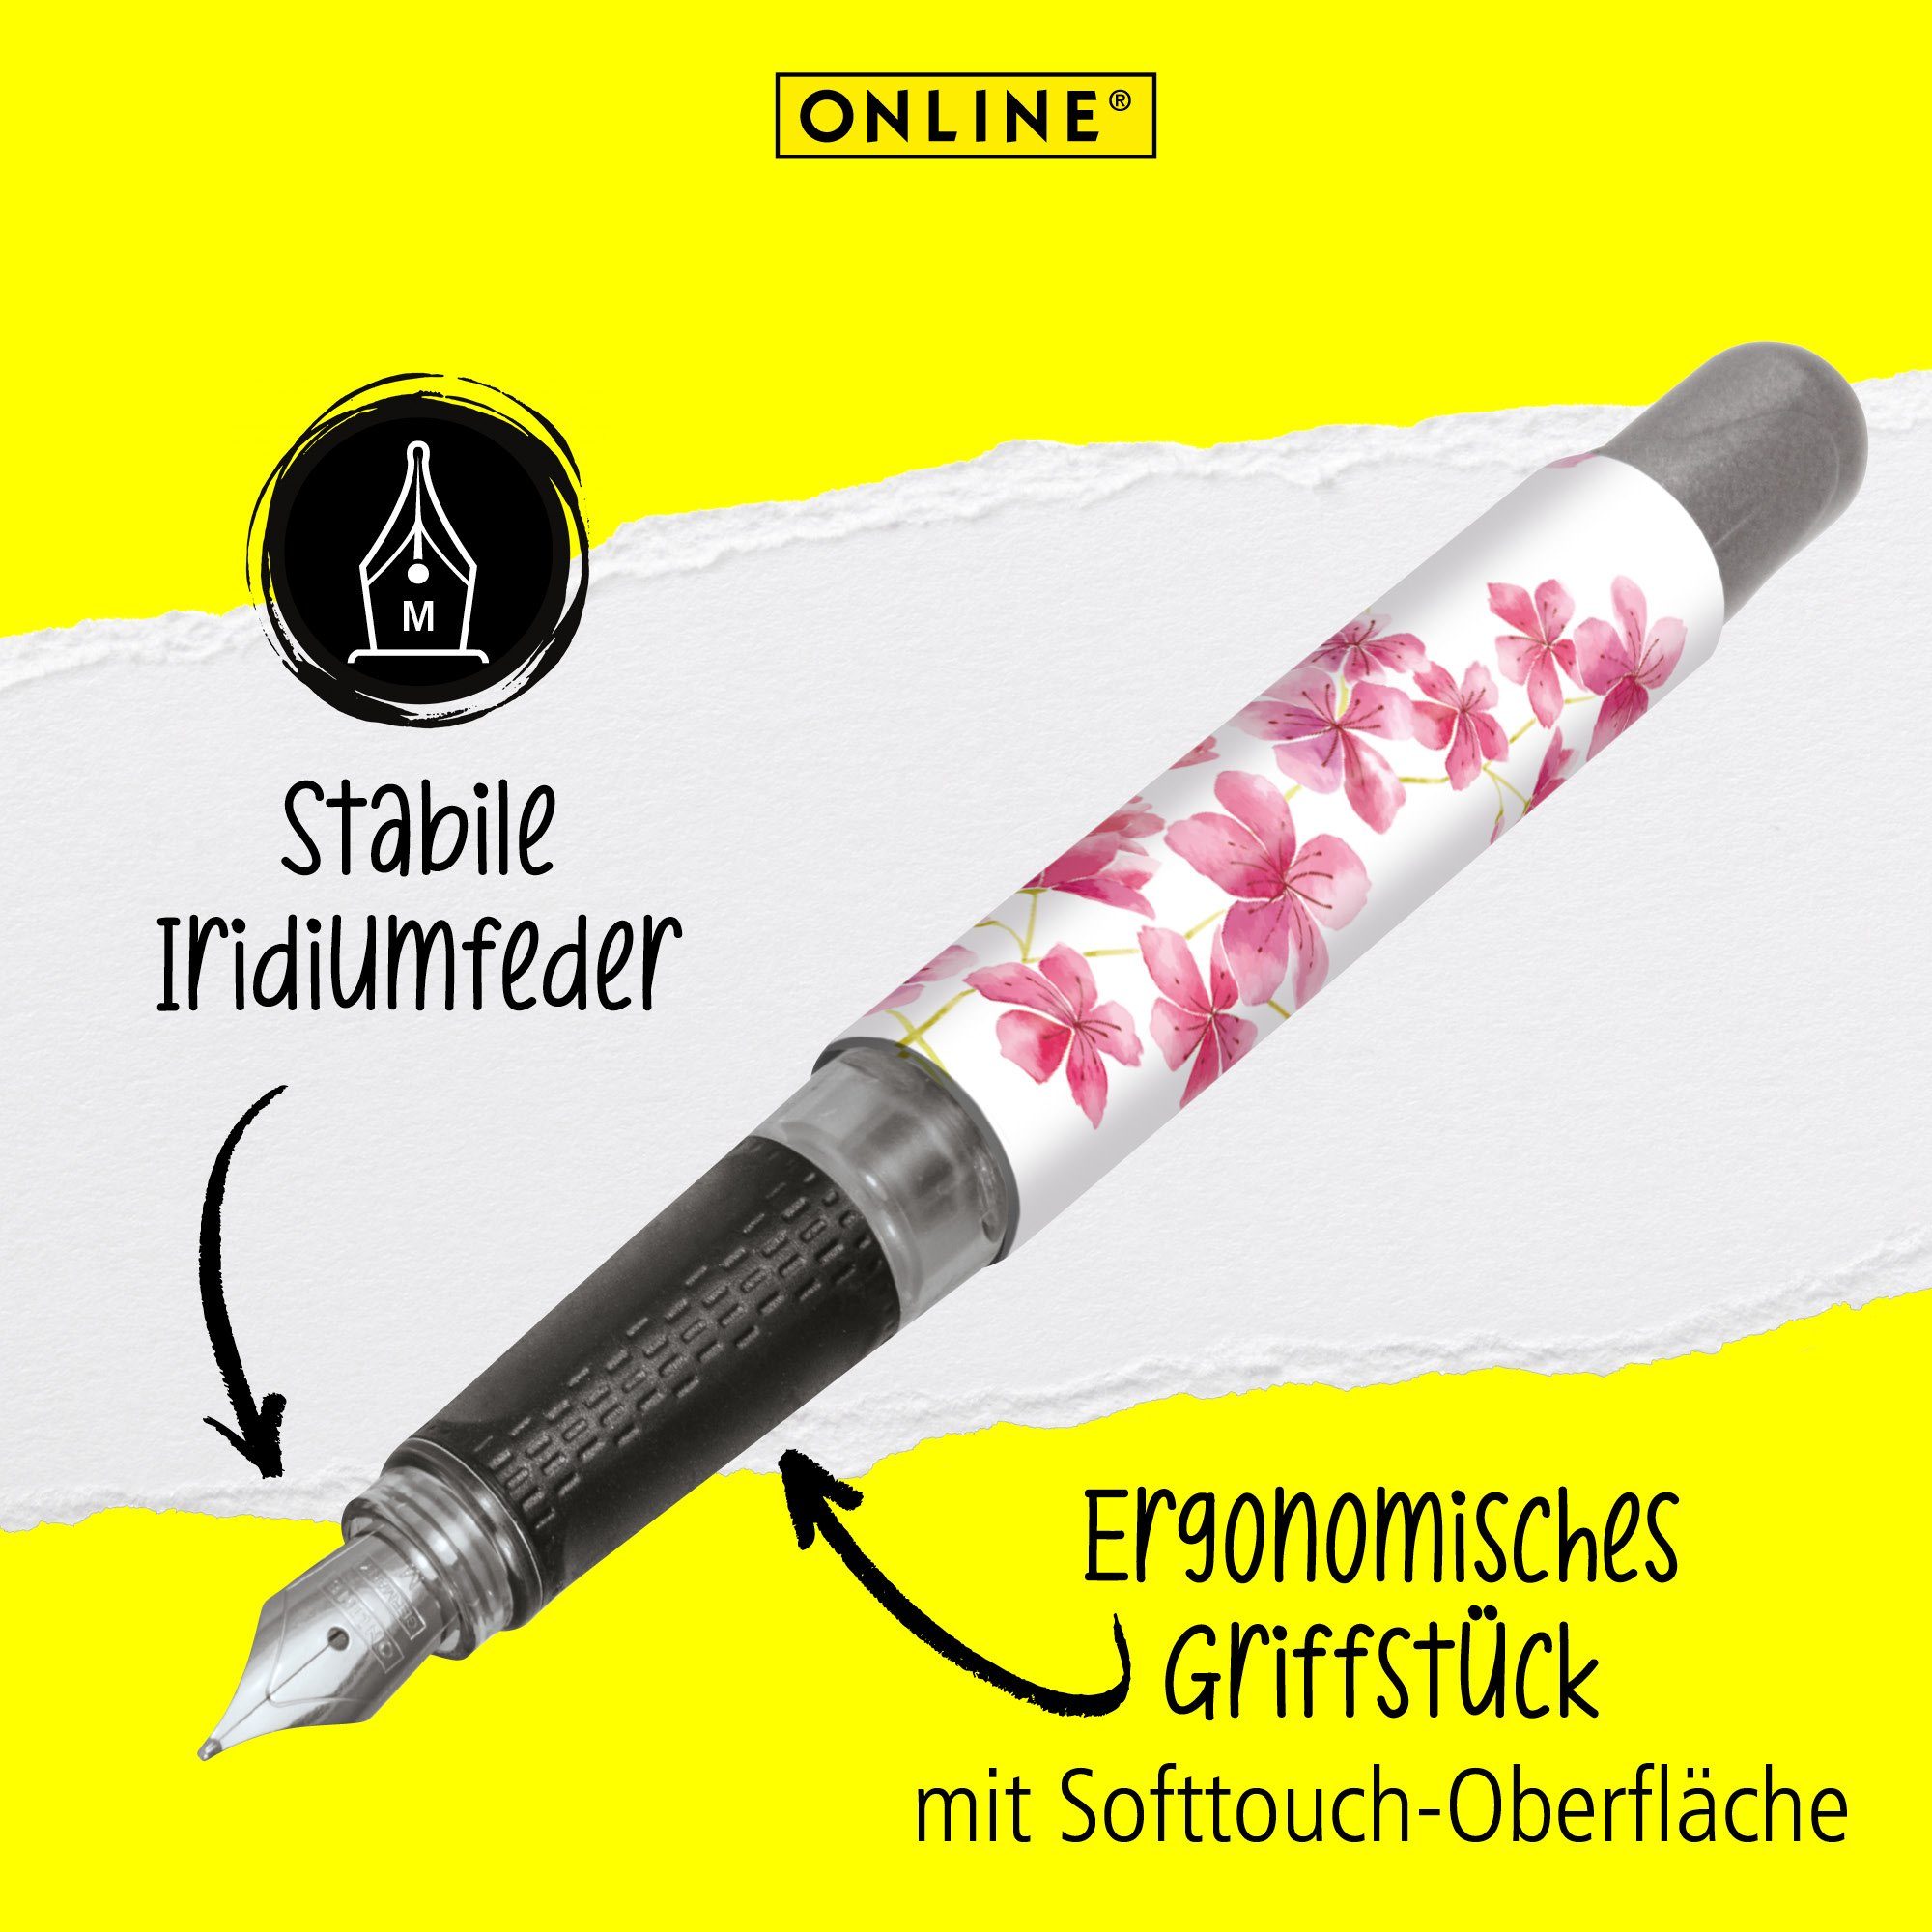 Online ergonomisch, in die Deutschland Schule, Blossom Cherry für hergestellt Füller Füllhalter, ideal College Pen